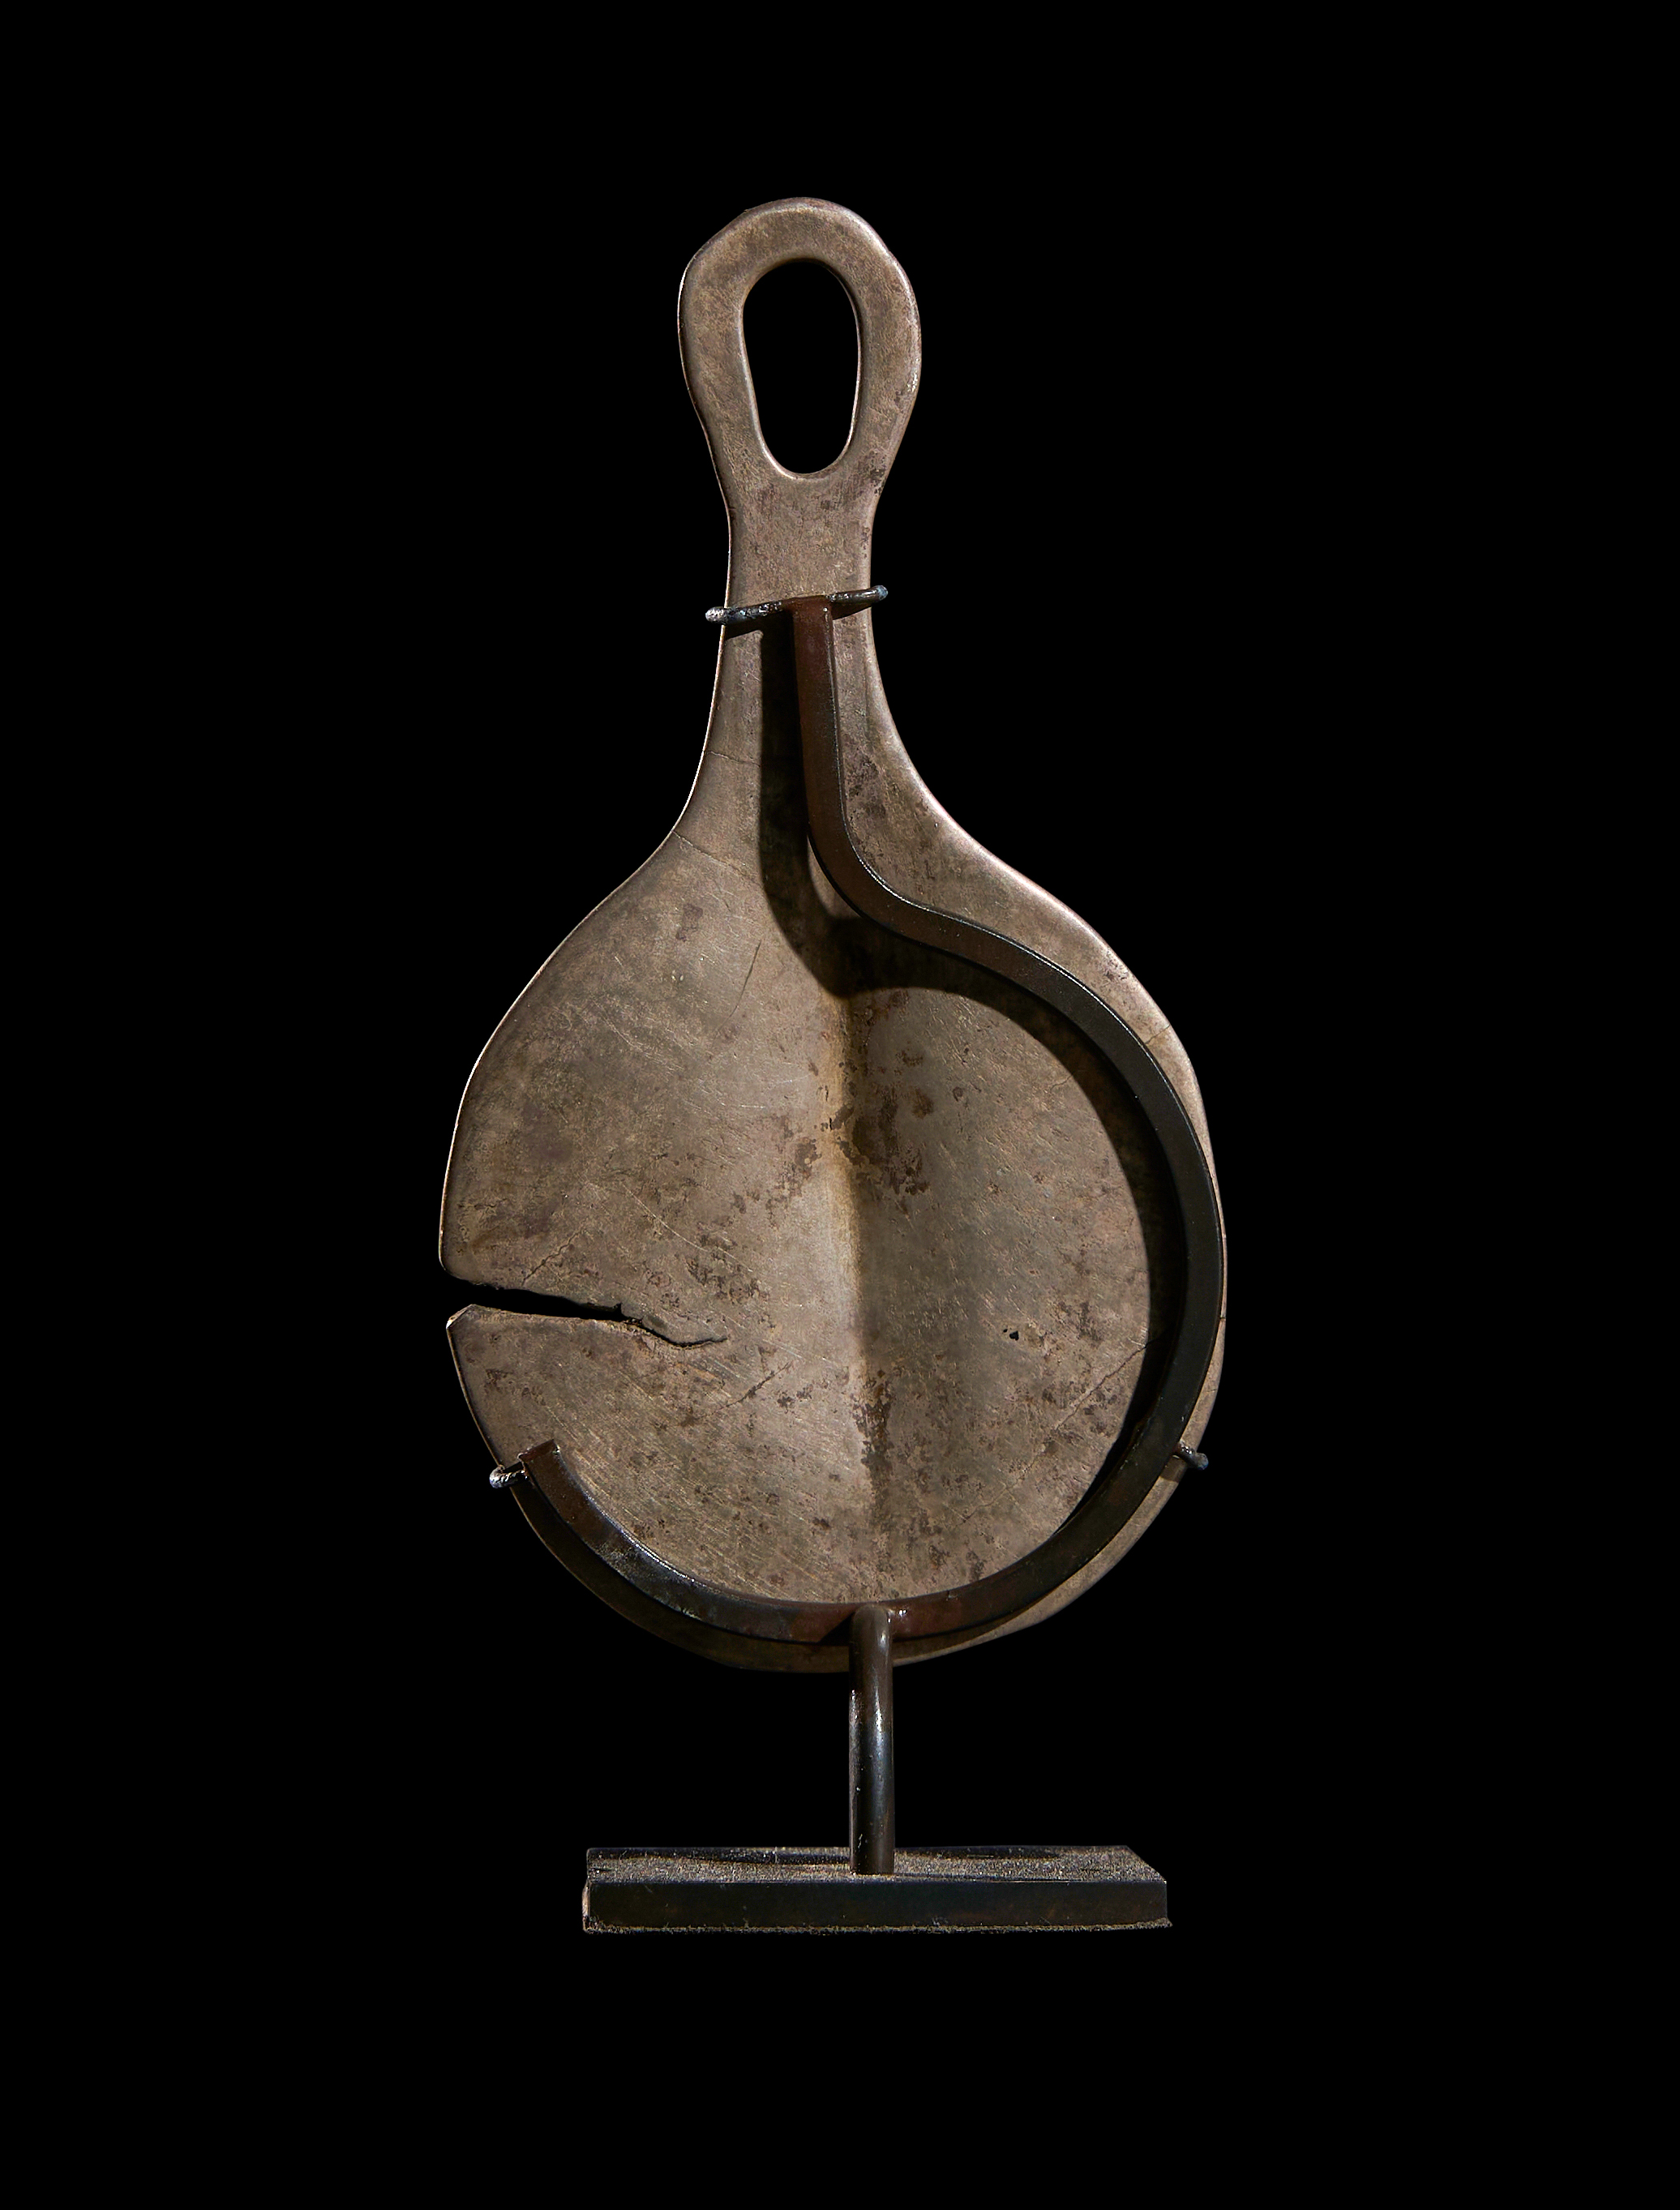 AN ANATOLIAN SILVER "MIRROR" EYE IDOL EARLY BRONZE AGE II, CIRCA 2700-2300 B.C. - Image 2 of 2